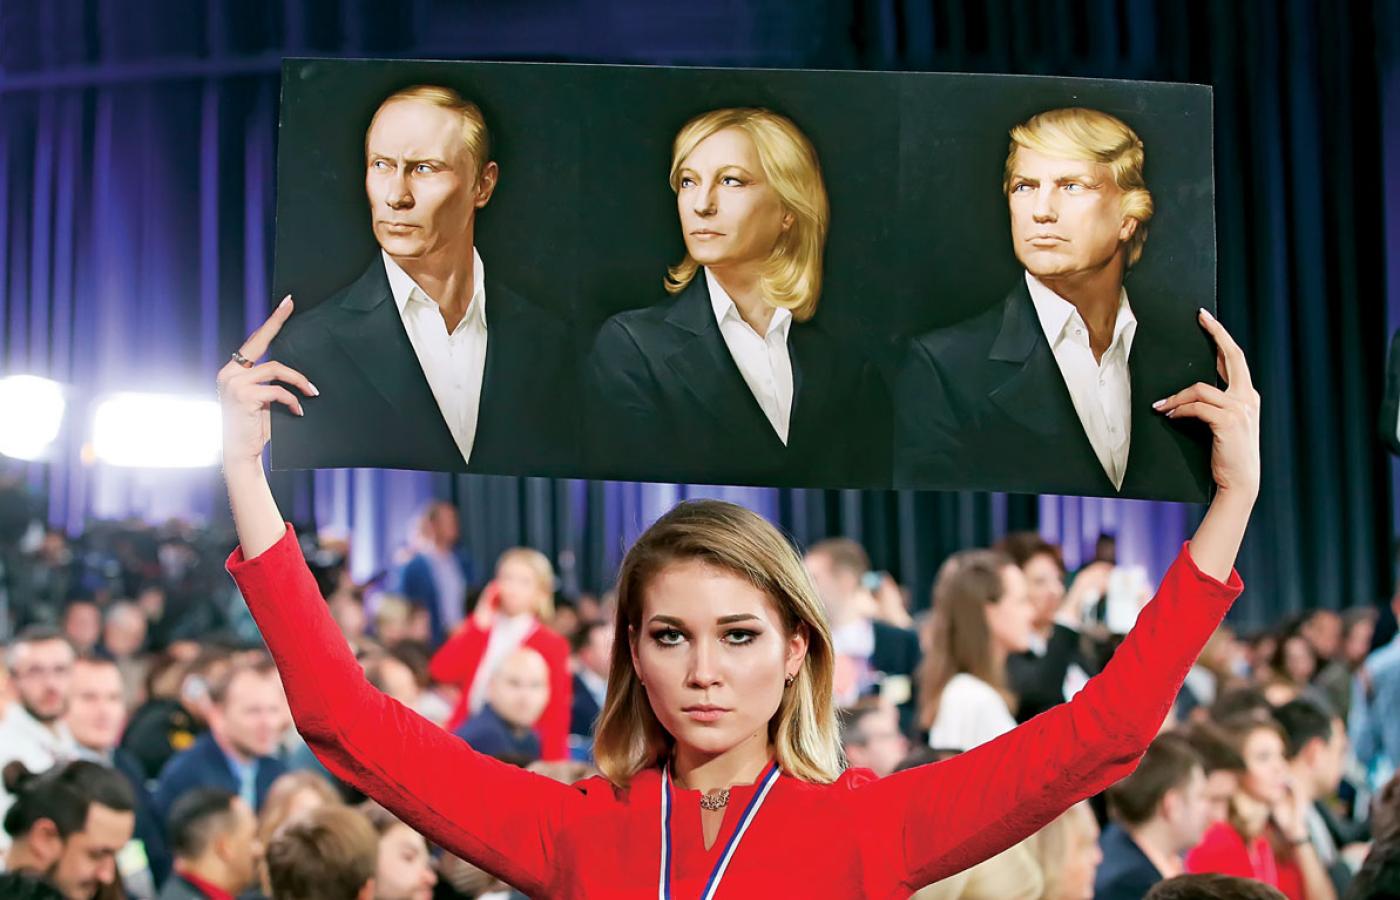 Putin, Le Pen i Trump, czyli wodzowie spod jednej sztancy – propagandowy plakat pokazany na konferencji prasowej prezydenta Rosji w Moskwie.